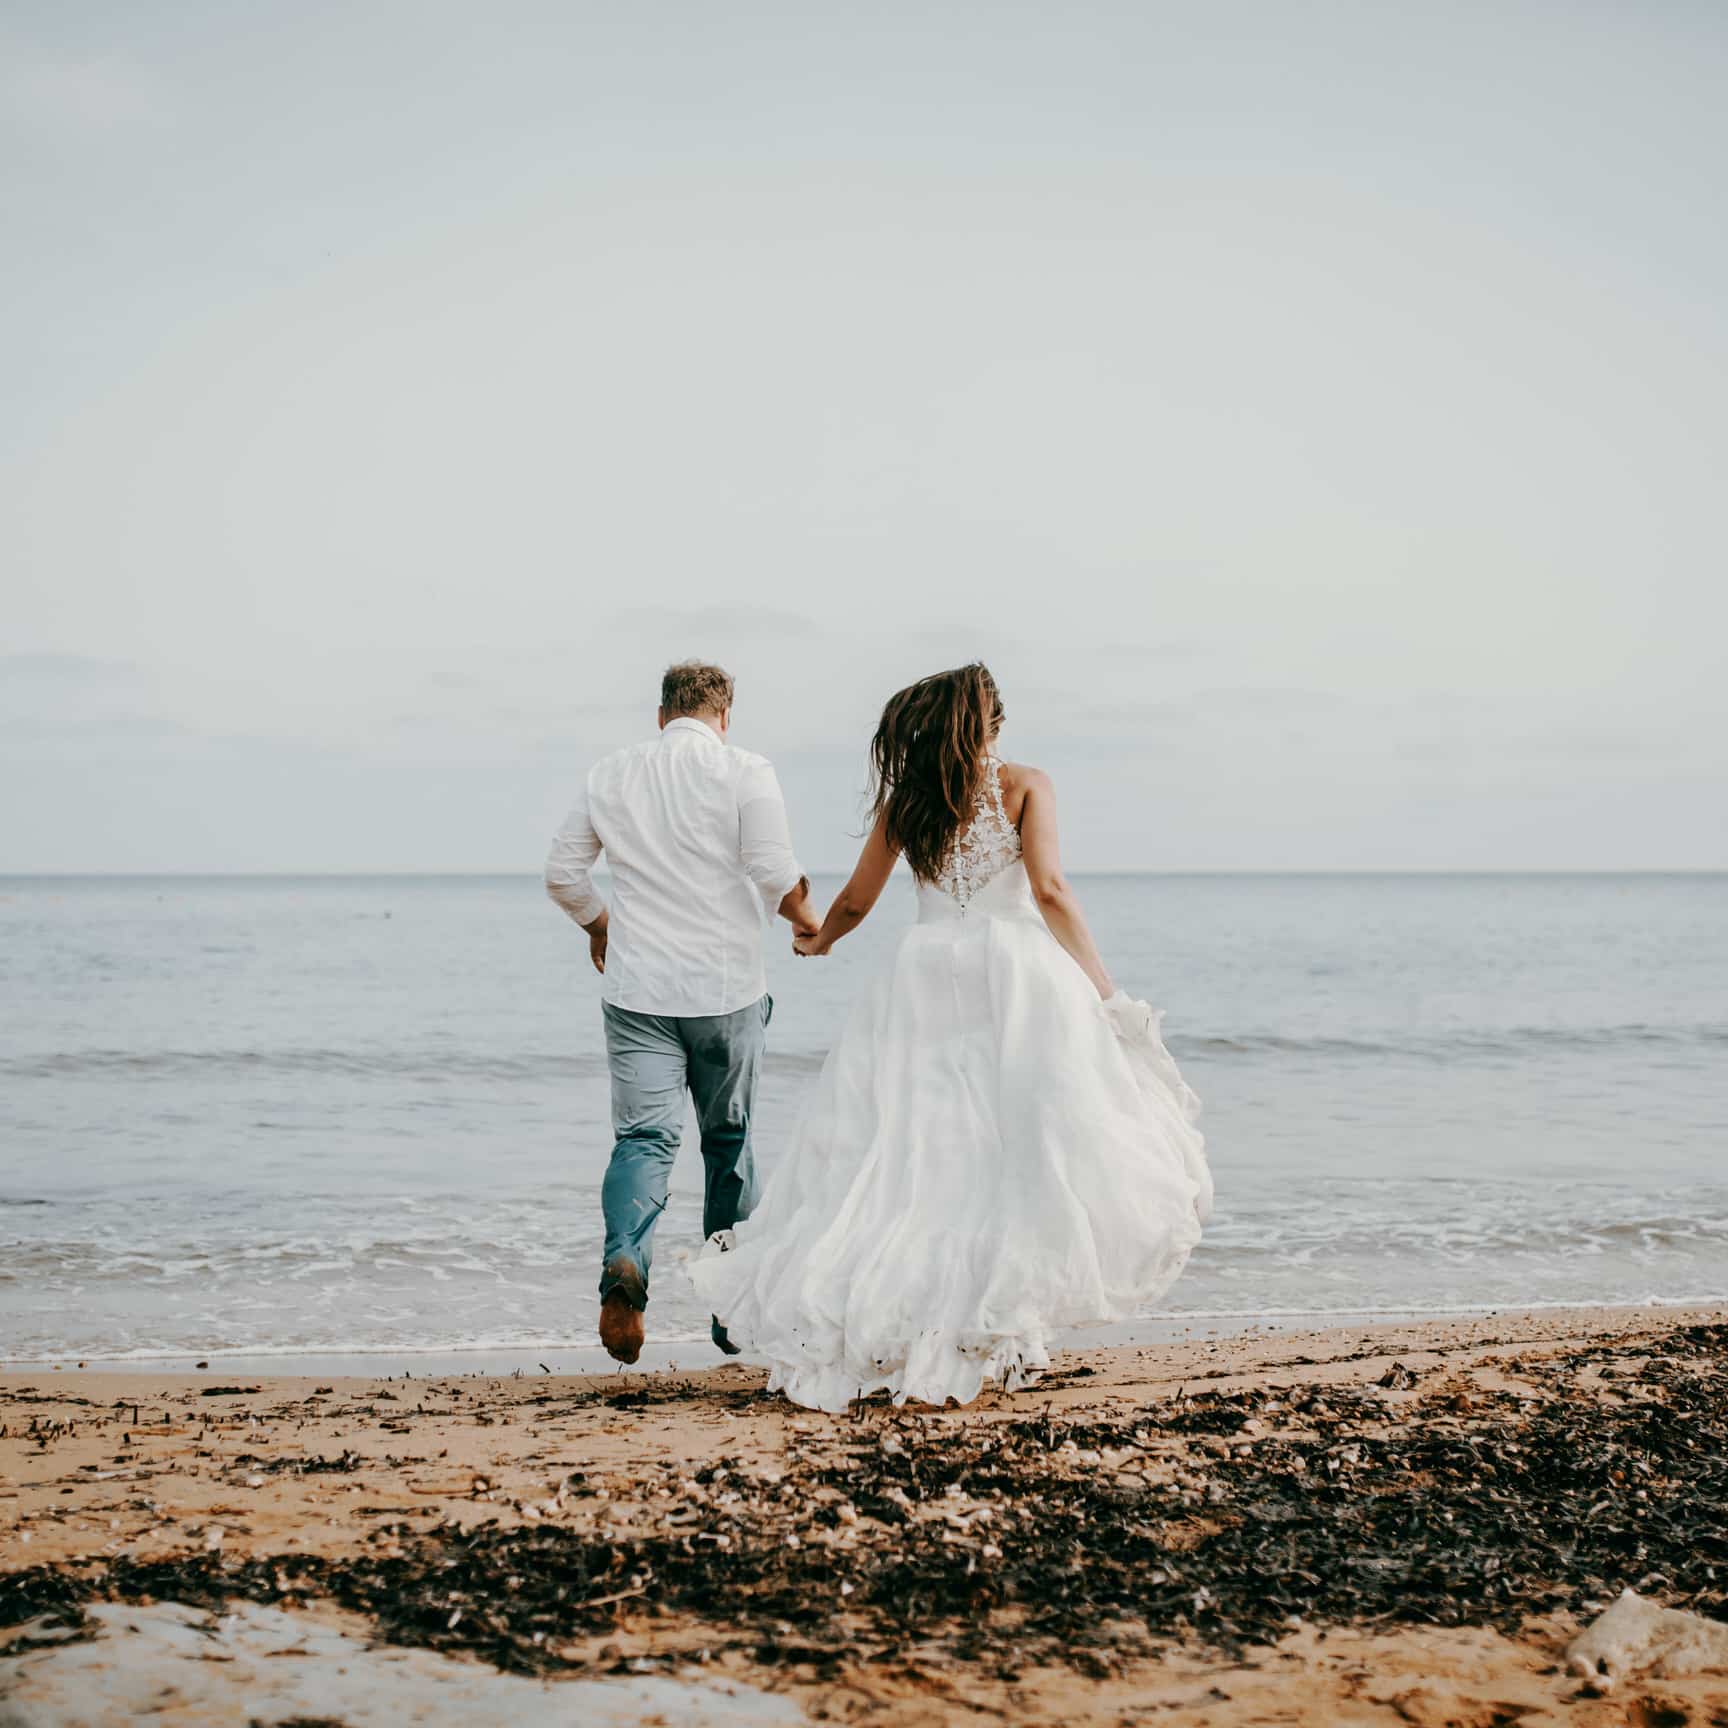 Als Hochzeitsfotograf auf Malta bei einer Strandhochzeit. Das Brautpaar rennt am Strand entlang, berührt mit den Füßen das Wasser, das Haar der Braut weht im Wind. Uns Hochzeitsfotografen Herz schlägt in solchen Momenten schneller.